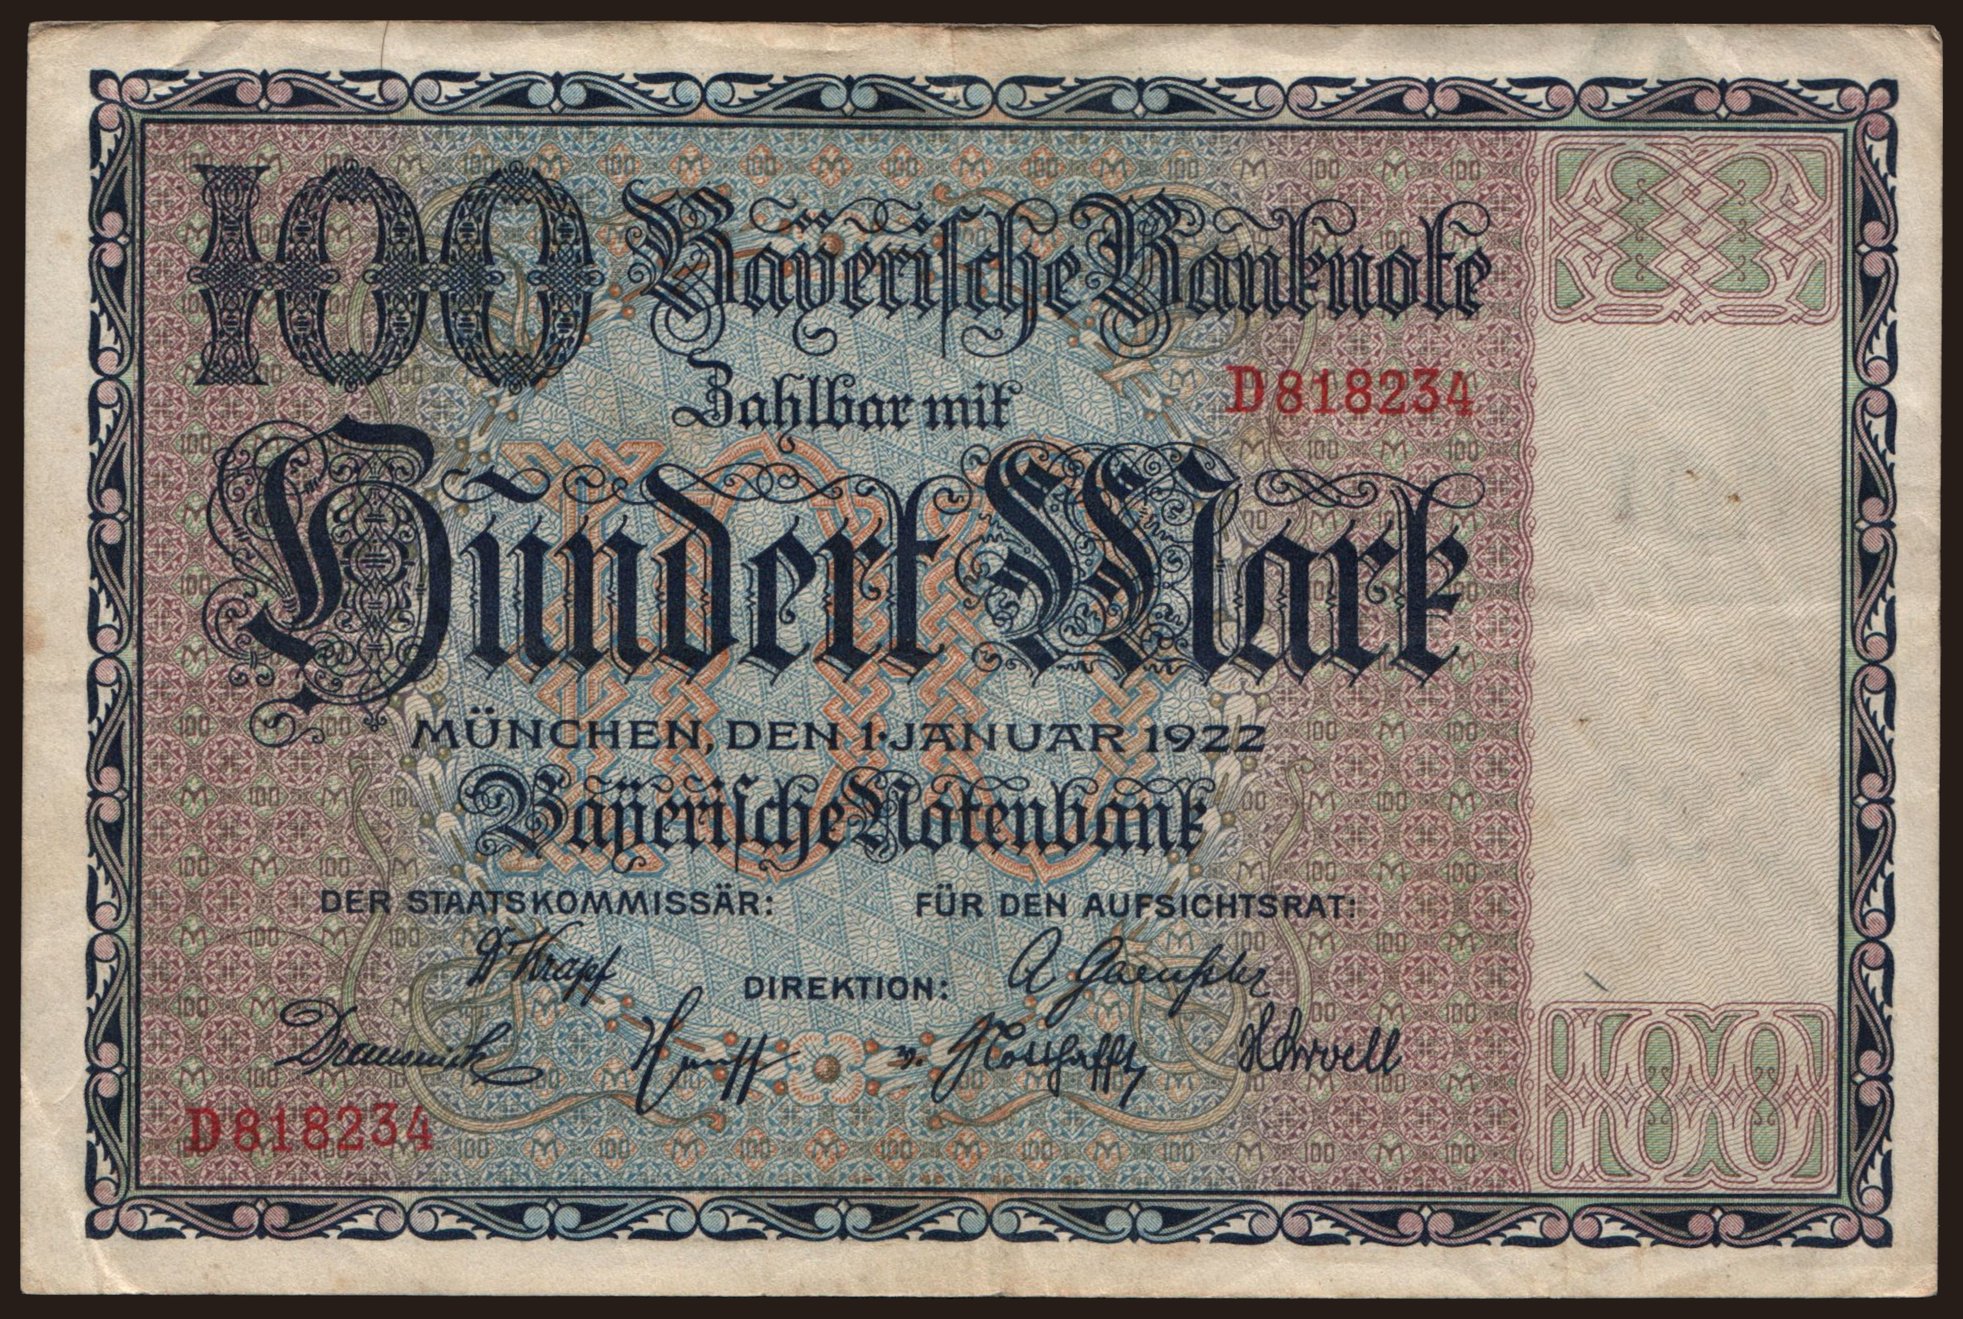 Bayerische Notenbank, 100 Mark, 1922